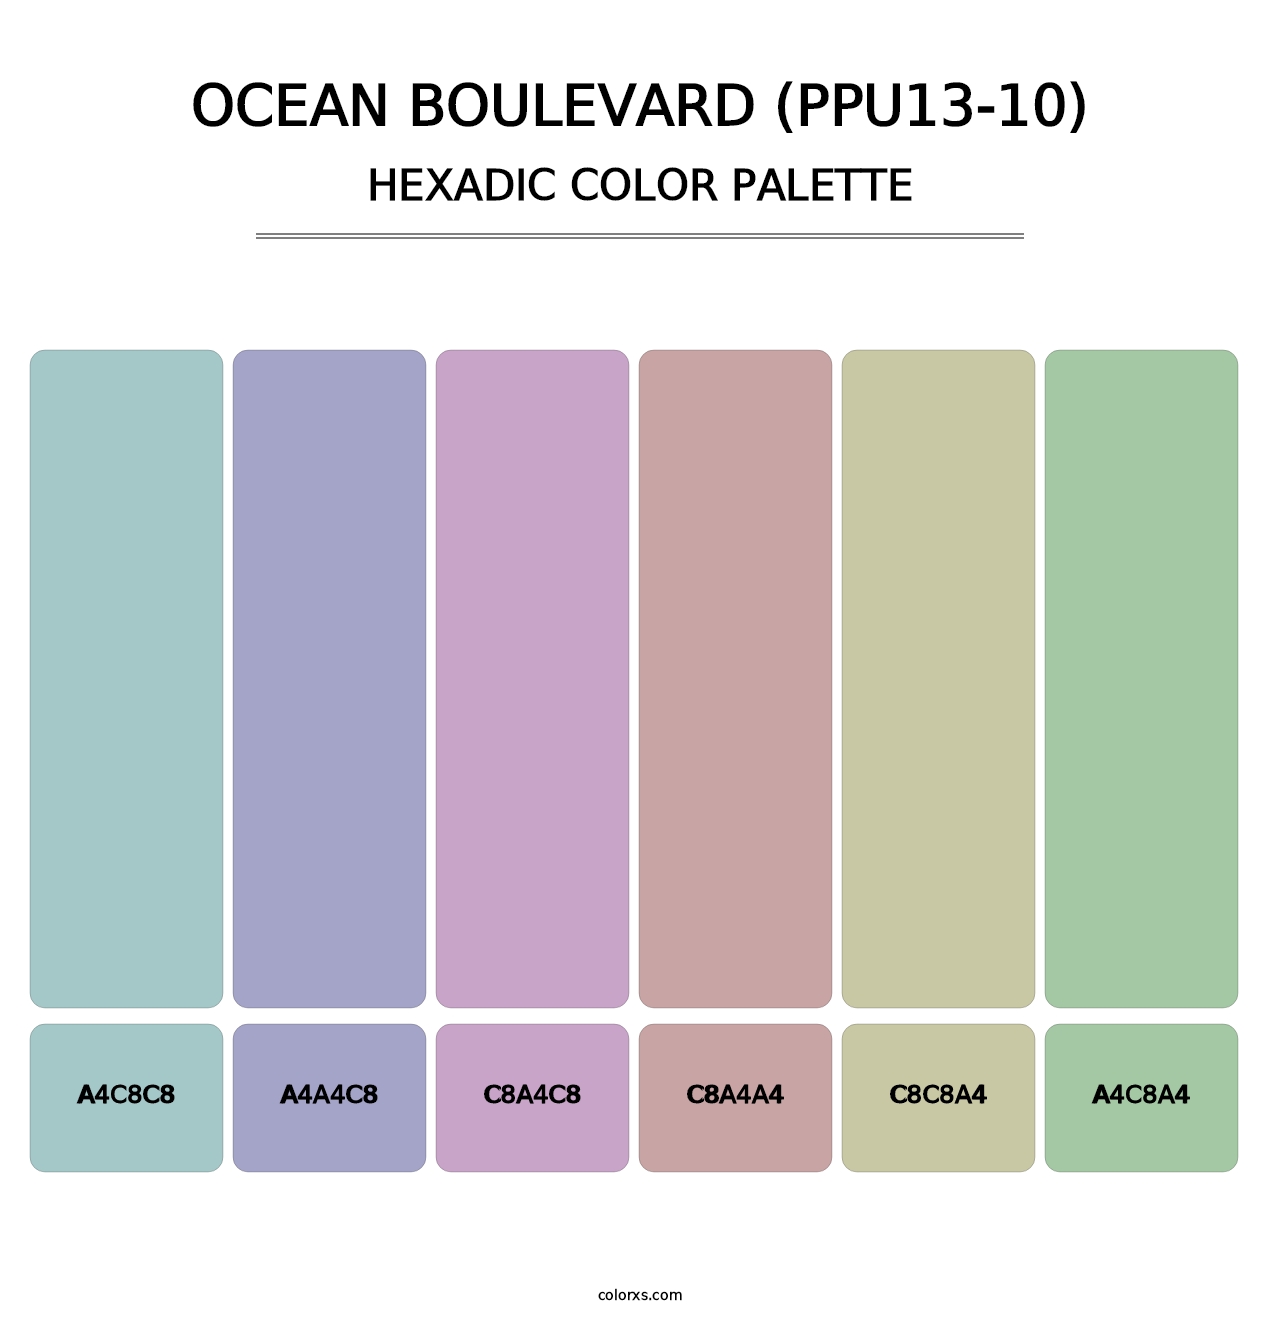 Ocean Boulevard (PPU13-10) - Hexadic Color Palette